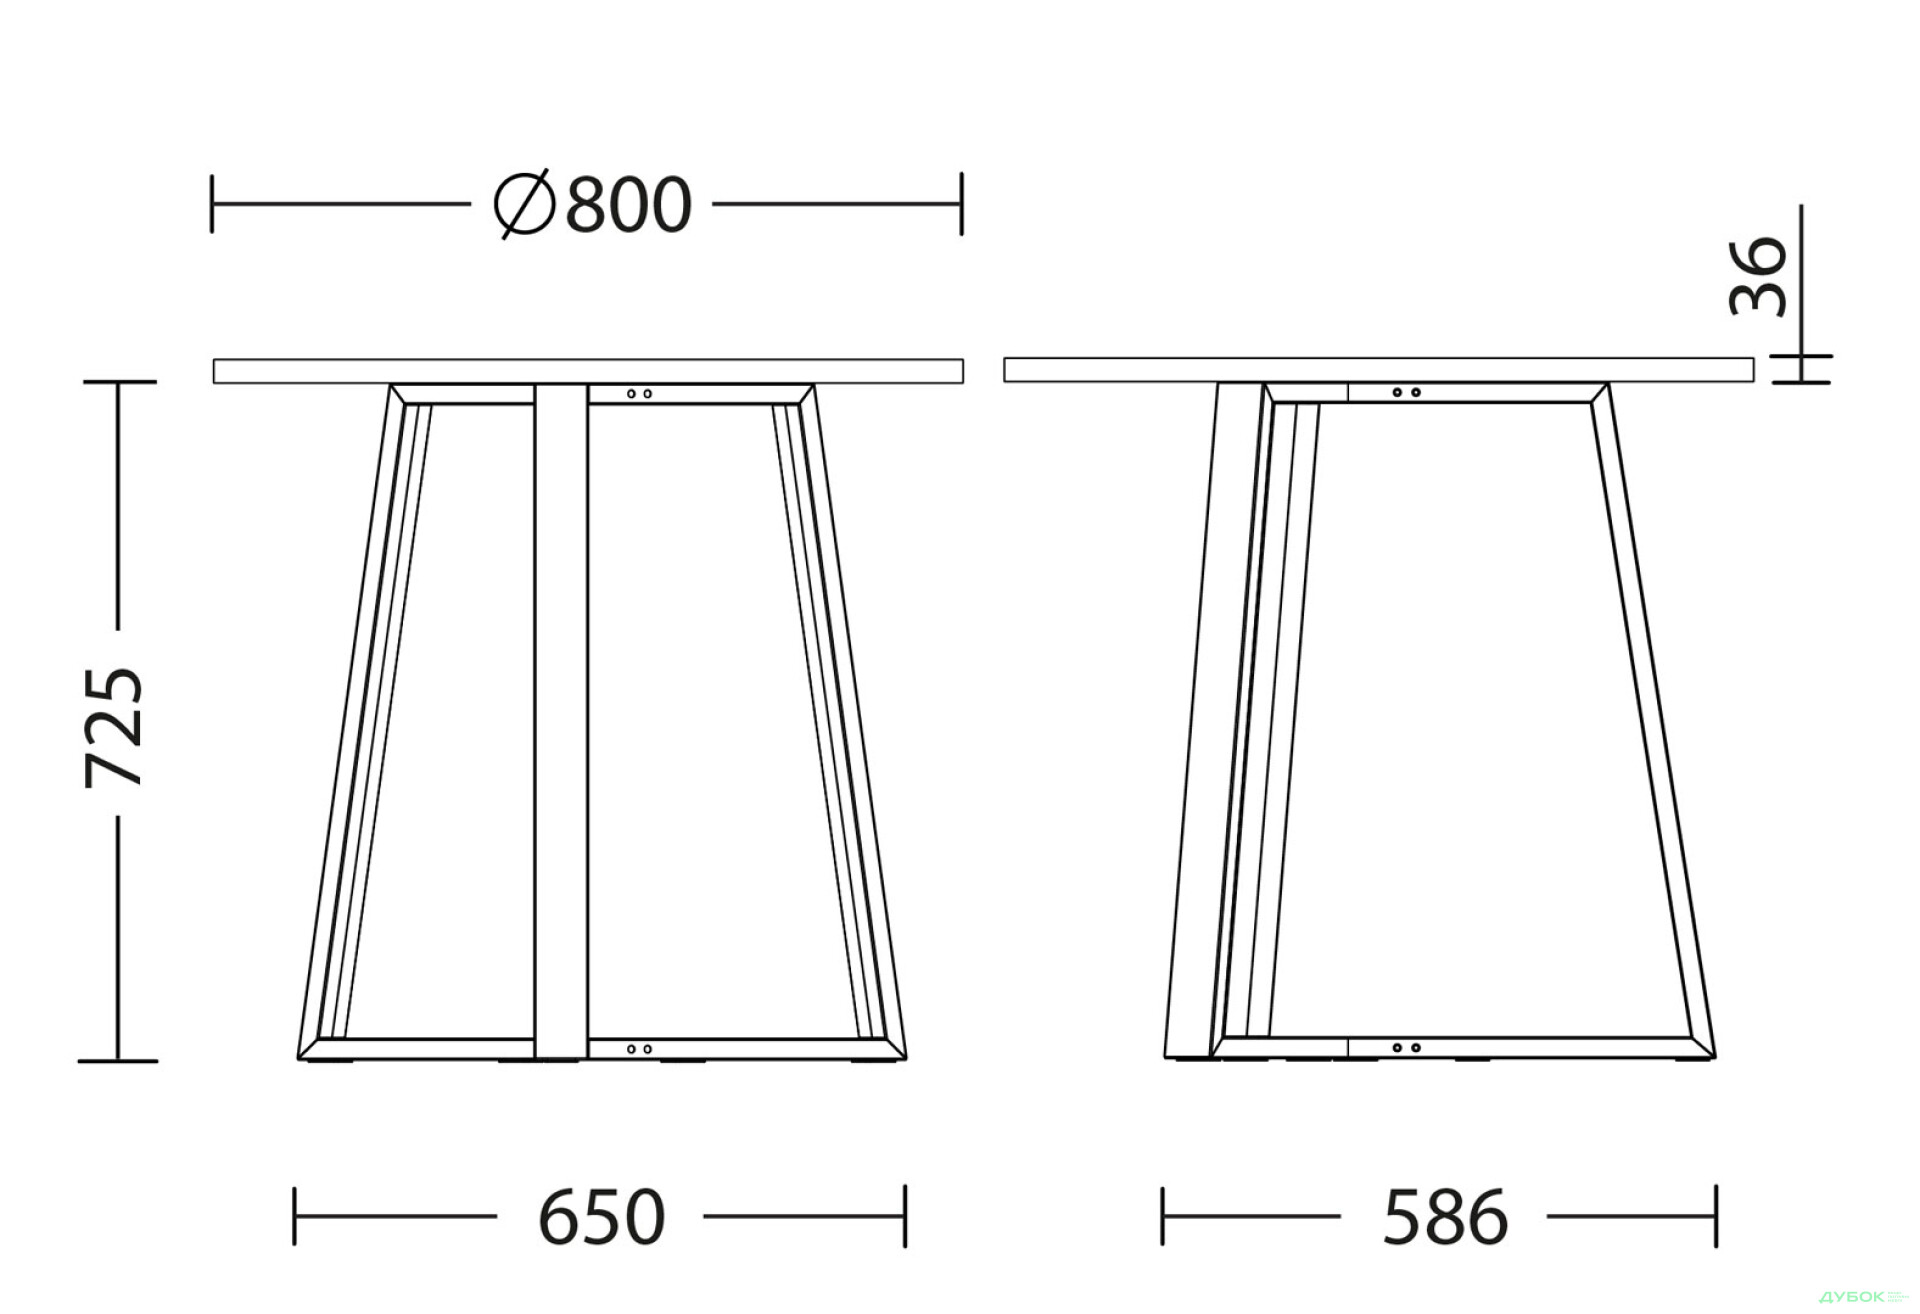 Фото 3 - Стол обеденный Новый Стиль Calipso black (36) D800 80x80 см, серый